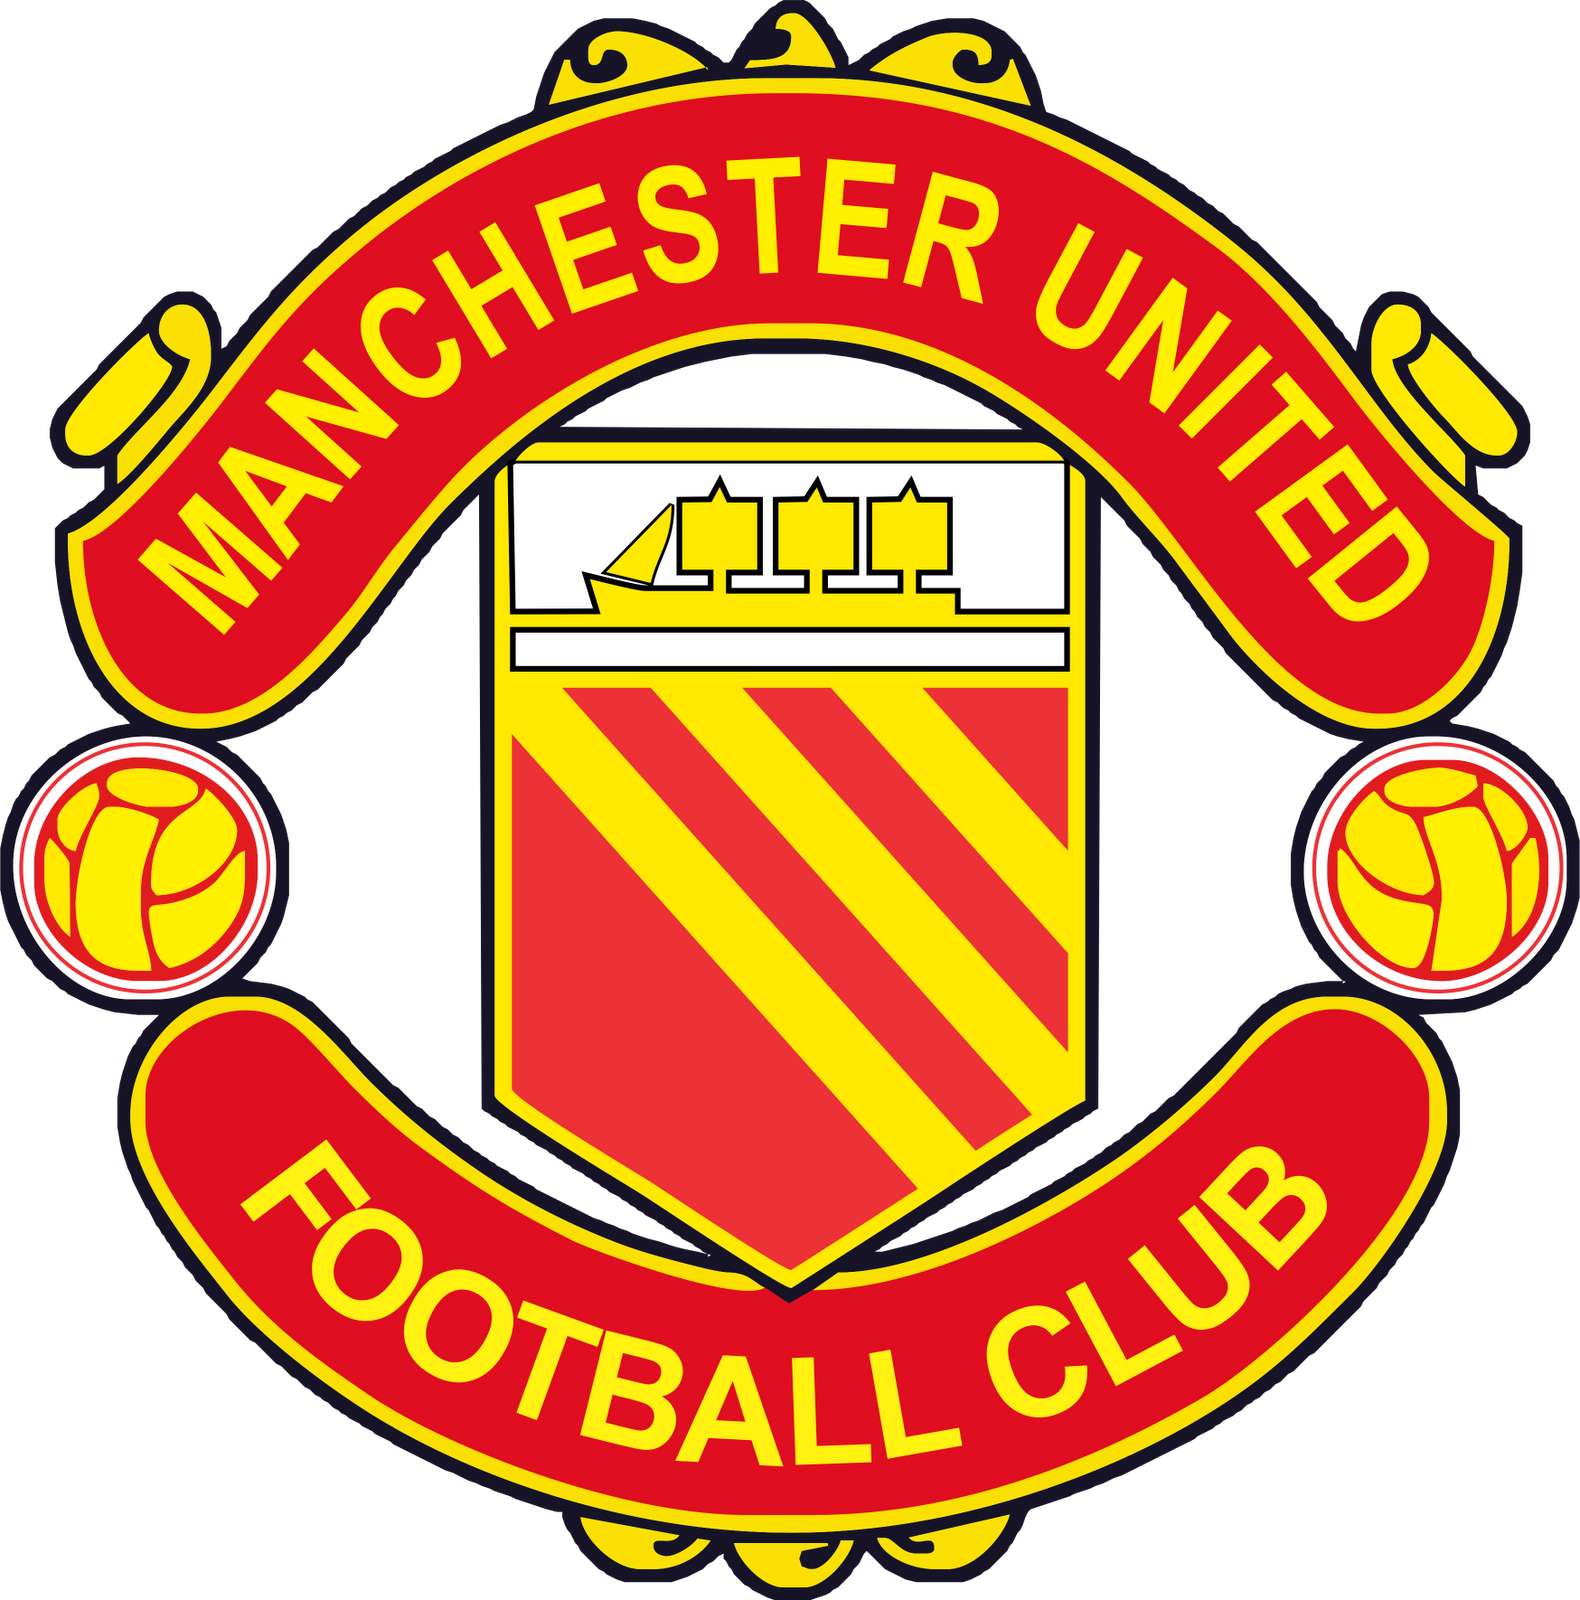 united logo transparent png